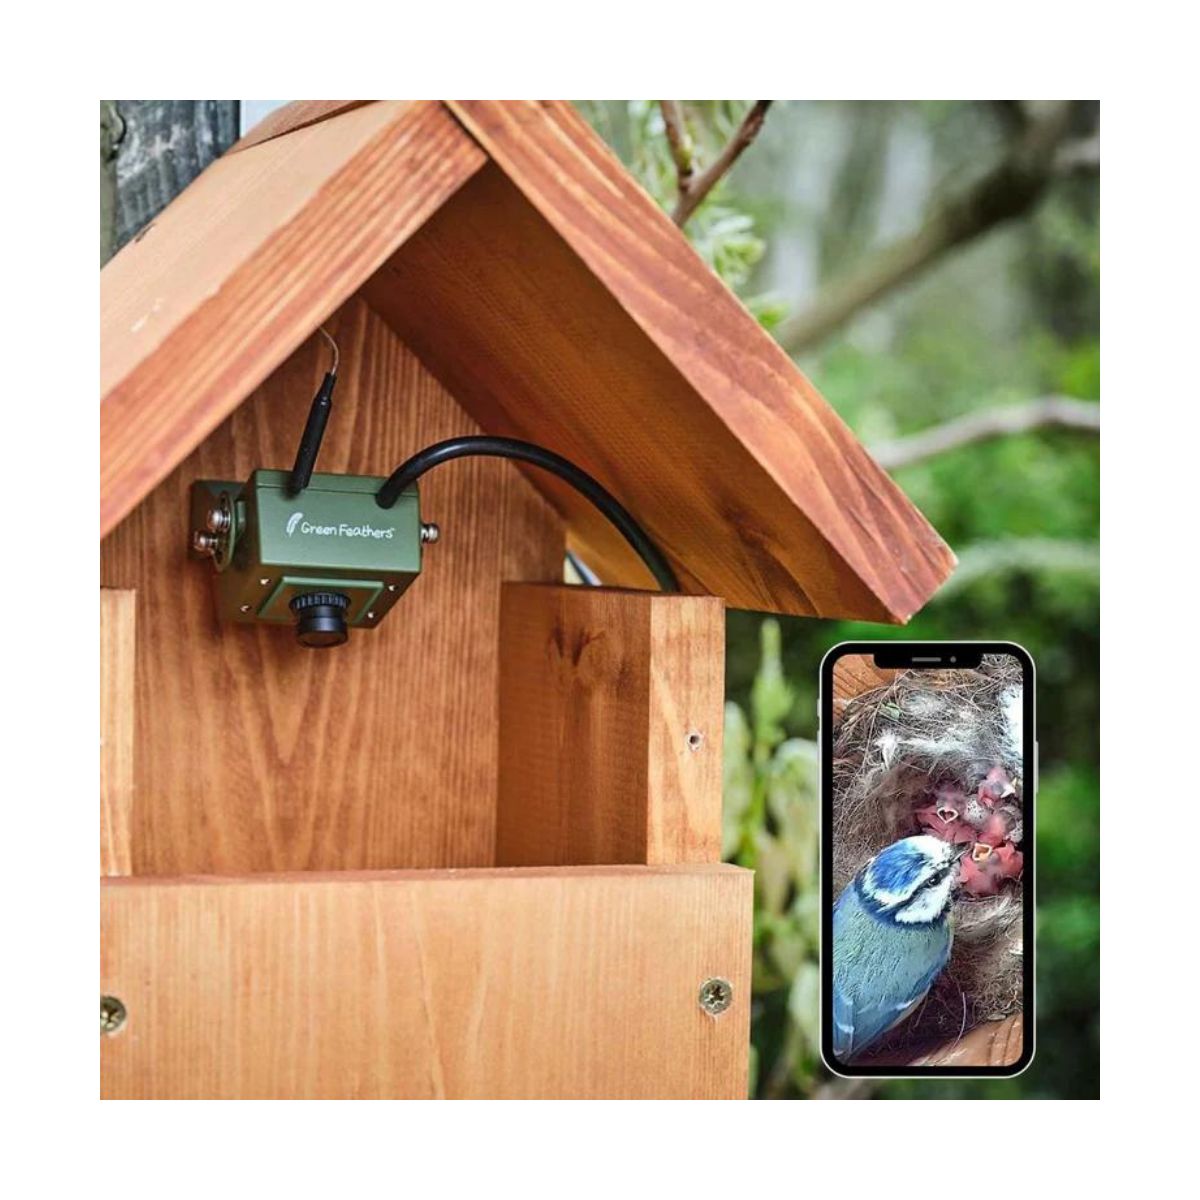 Caméra wifi pour Nichoir à oiseaux (avec cable 10 m inclus)